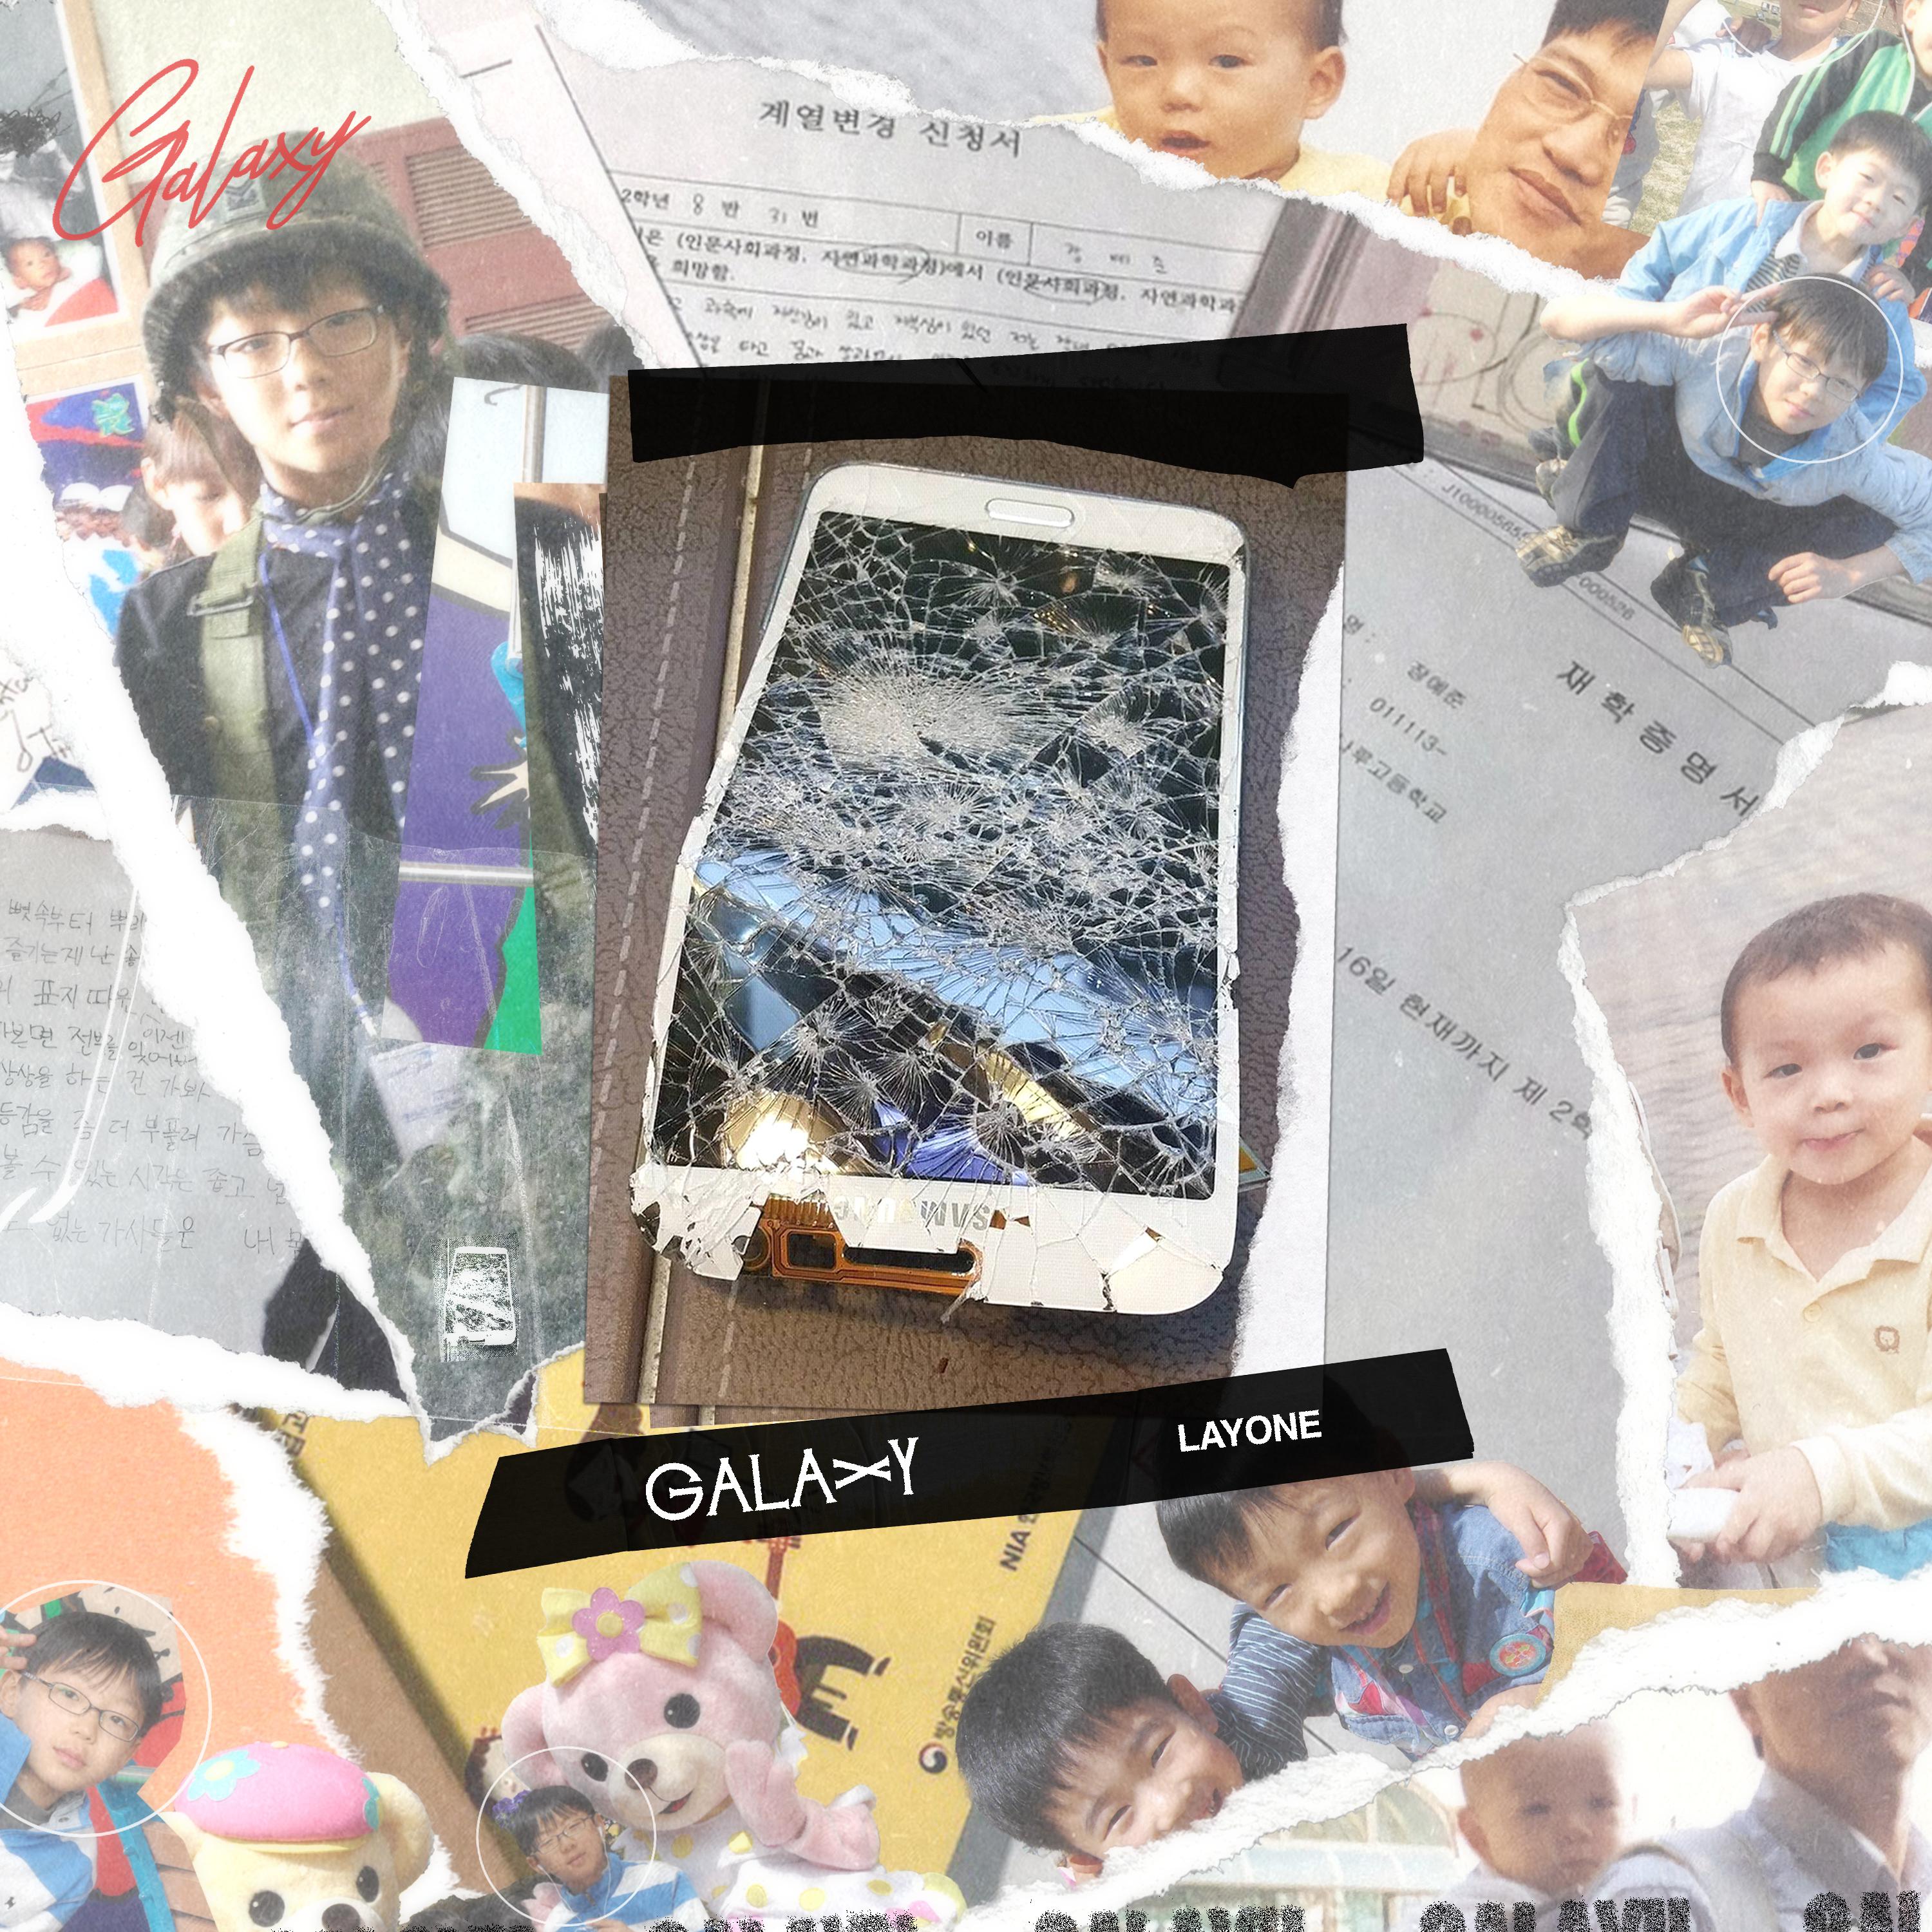 Galaxy S2歌词 歌手래원 / 韩国人-专辑Fxxxiboy-单曲《Galaxy S2》LRC歌词下载